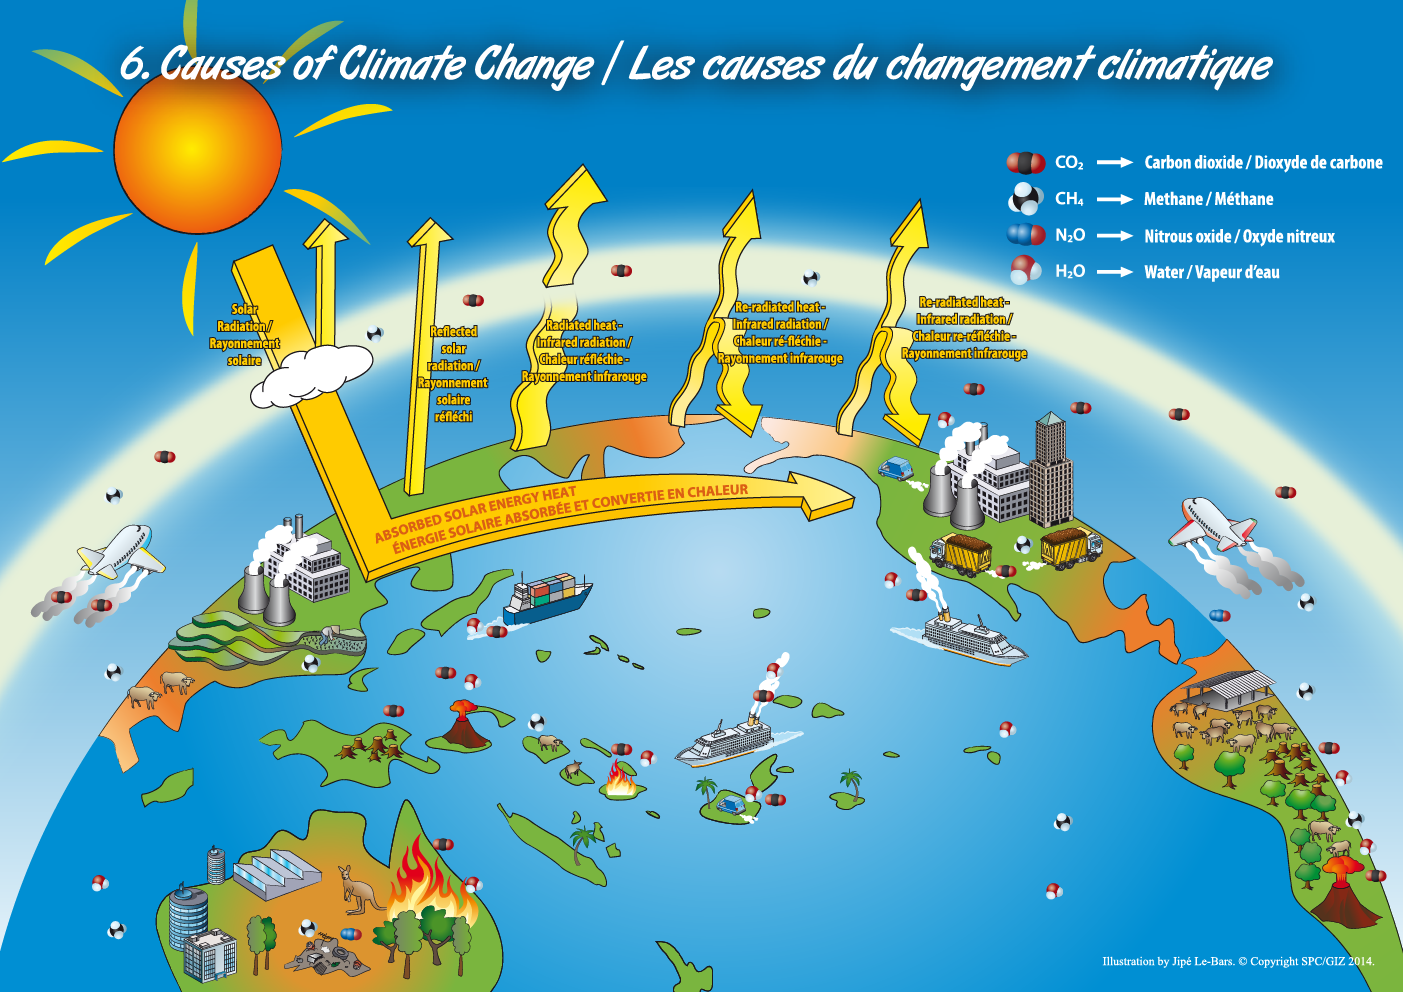 Causes of Climate Change / Les causes du changement climatique